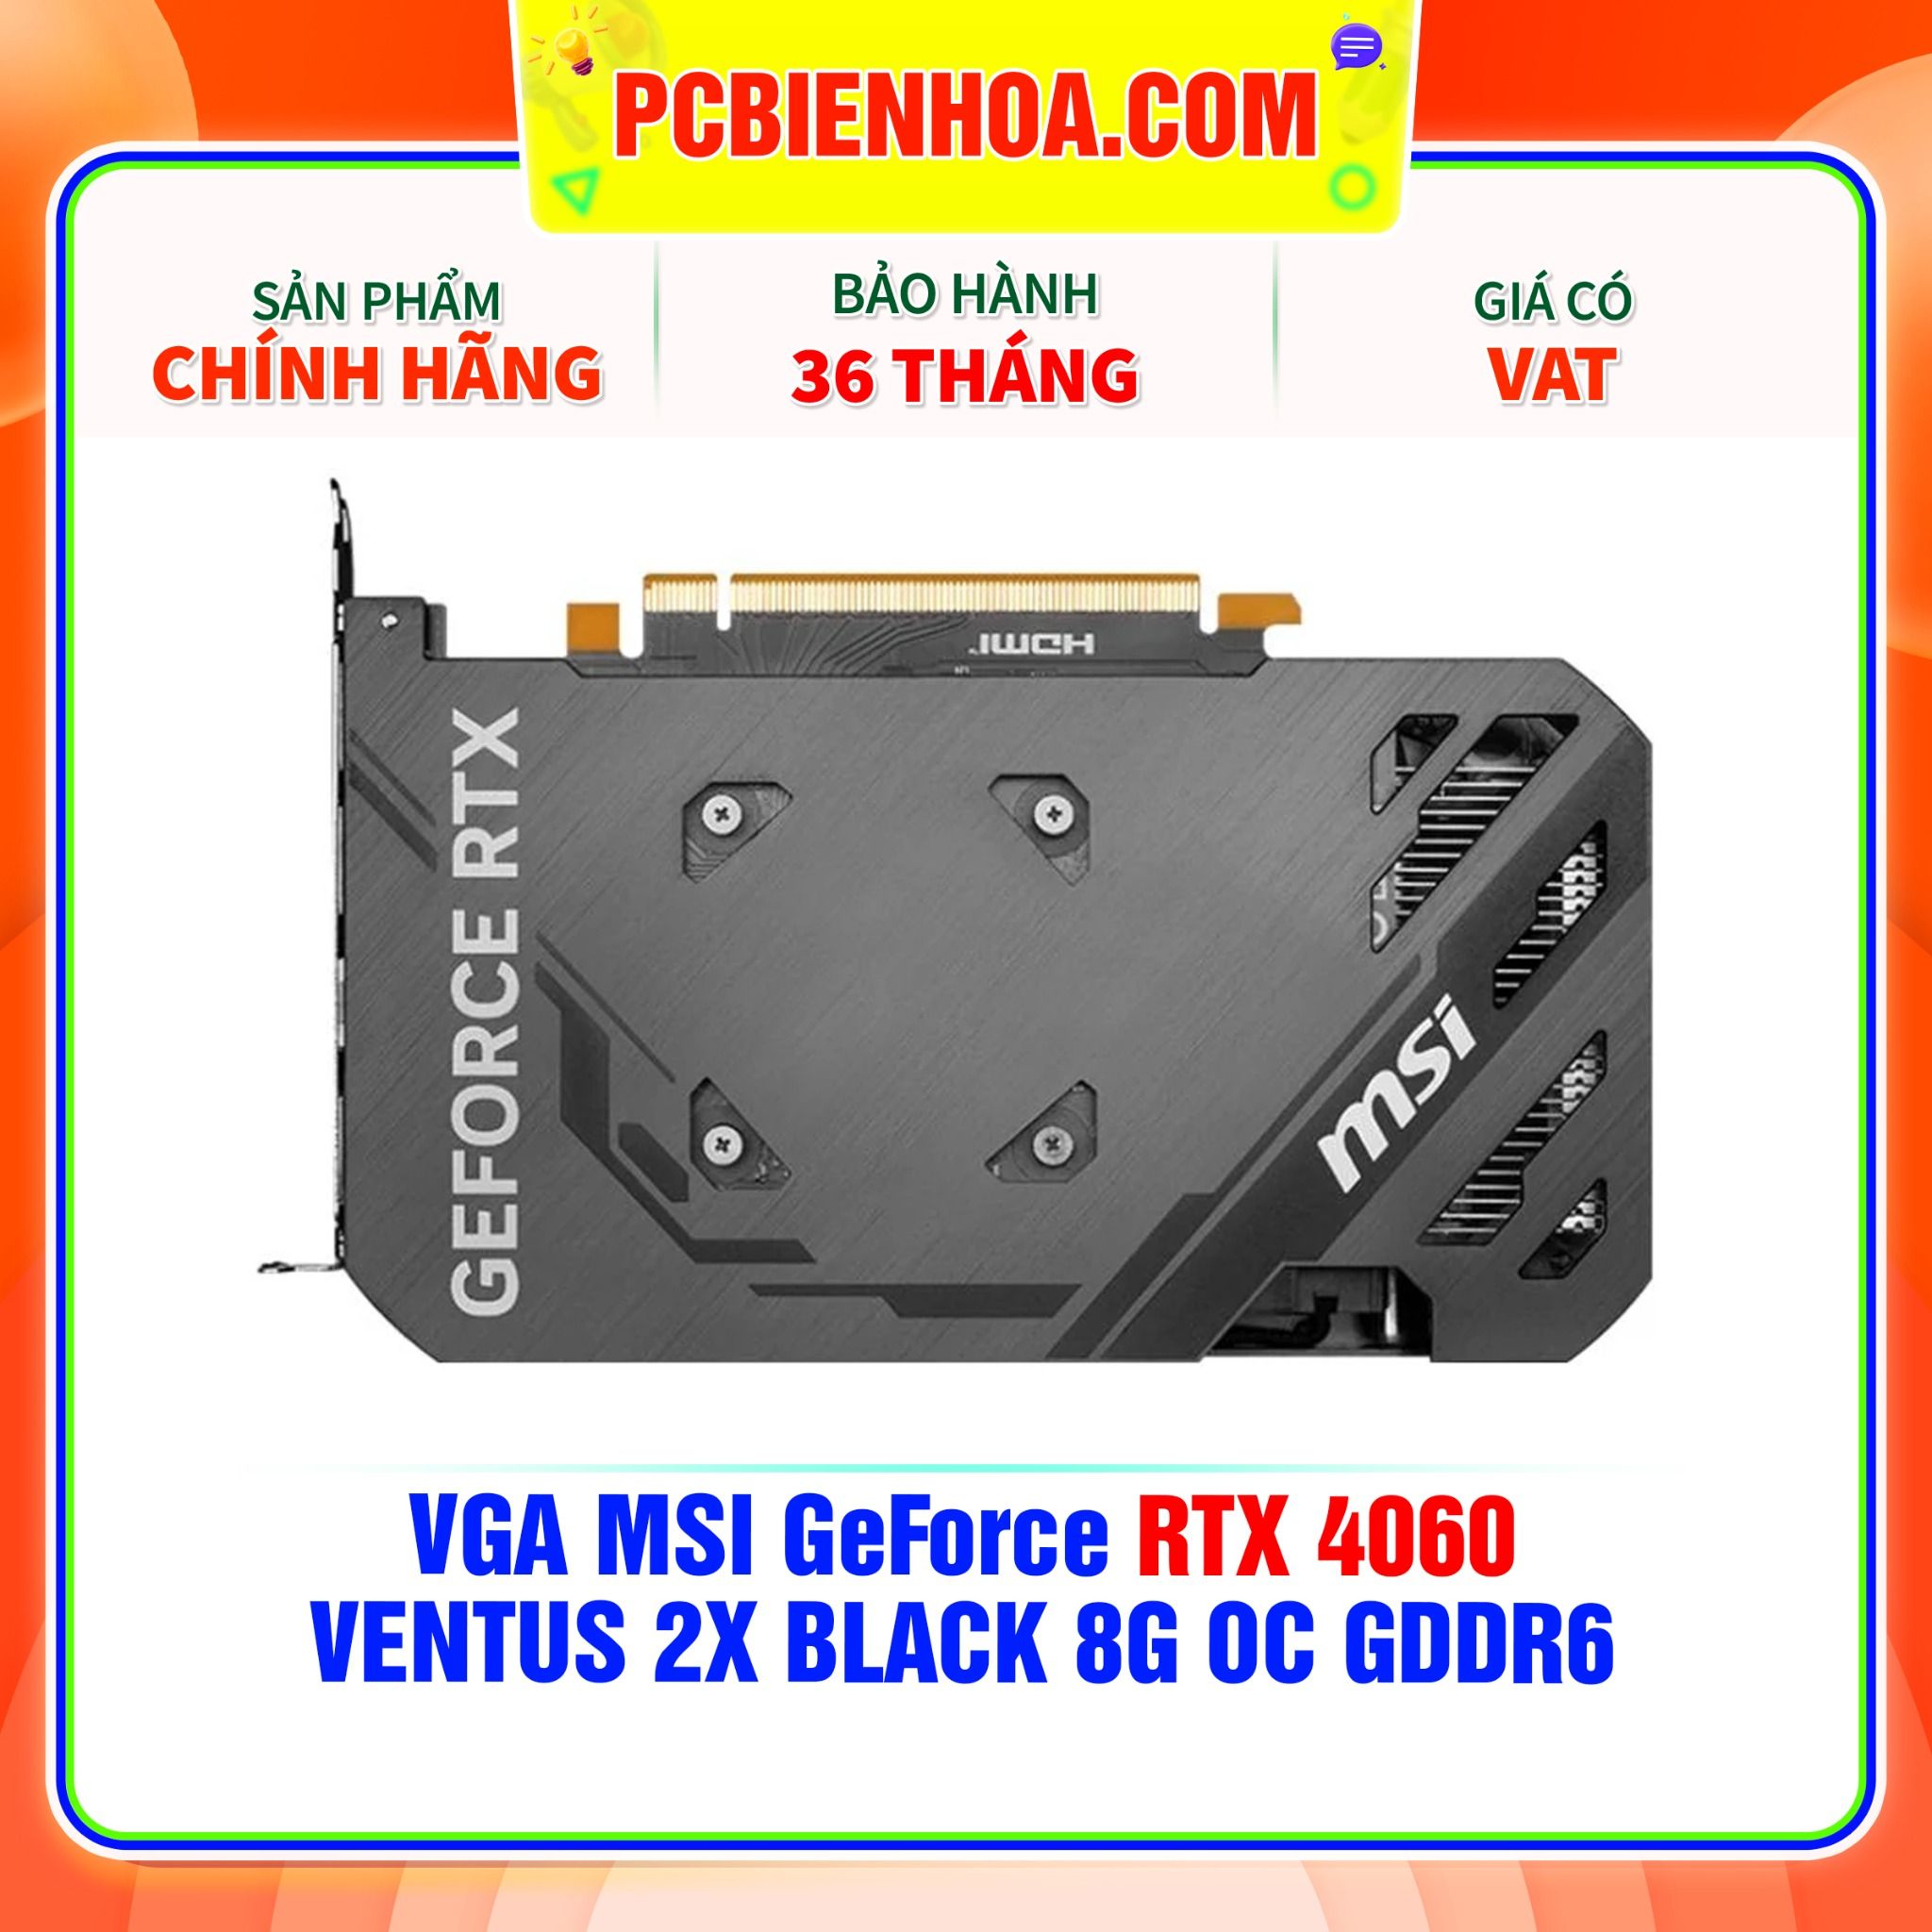  VGA MSI GeForce RTX 4060 VENTUS 2X BLACK 8G OC GDDR6 